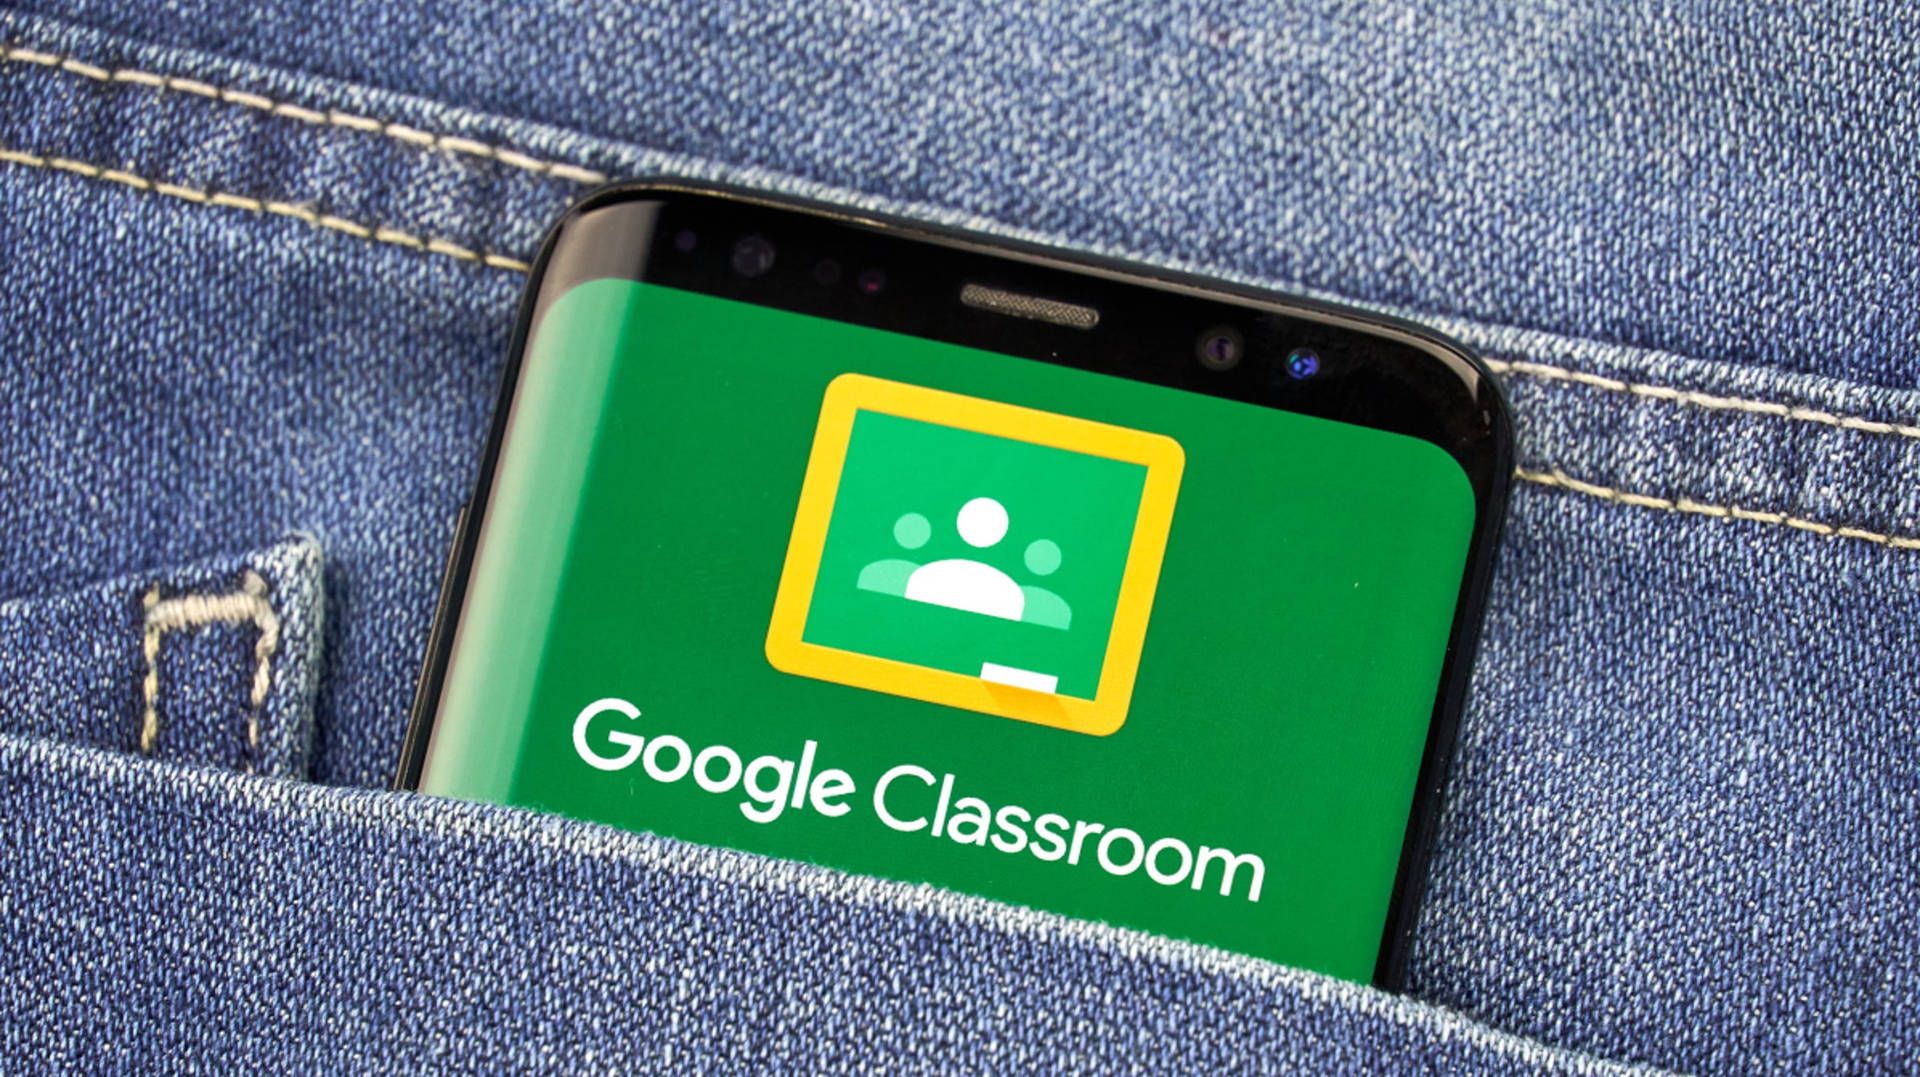 Aplicaciónde Google Classroom En El Teléfono En El Bolsillo. Fondo de pantalla